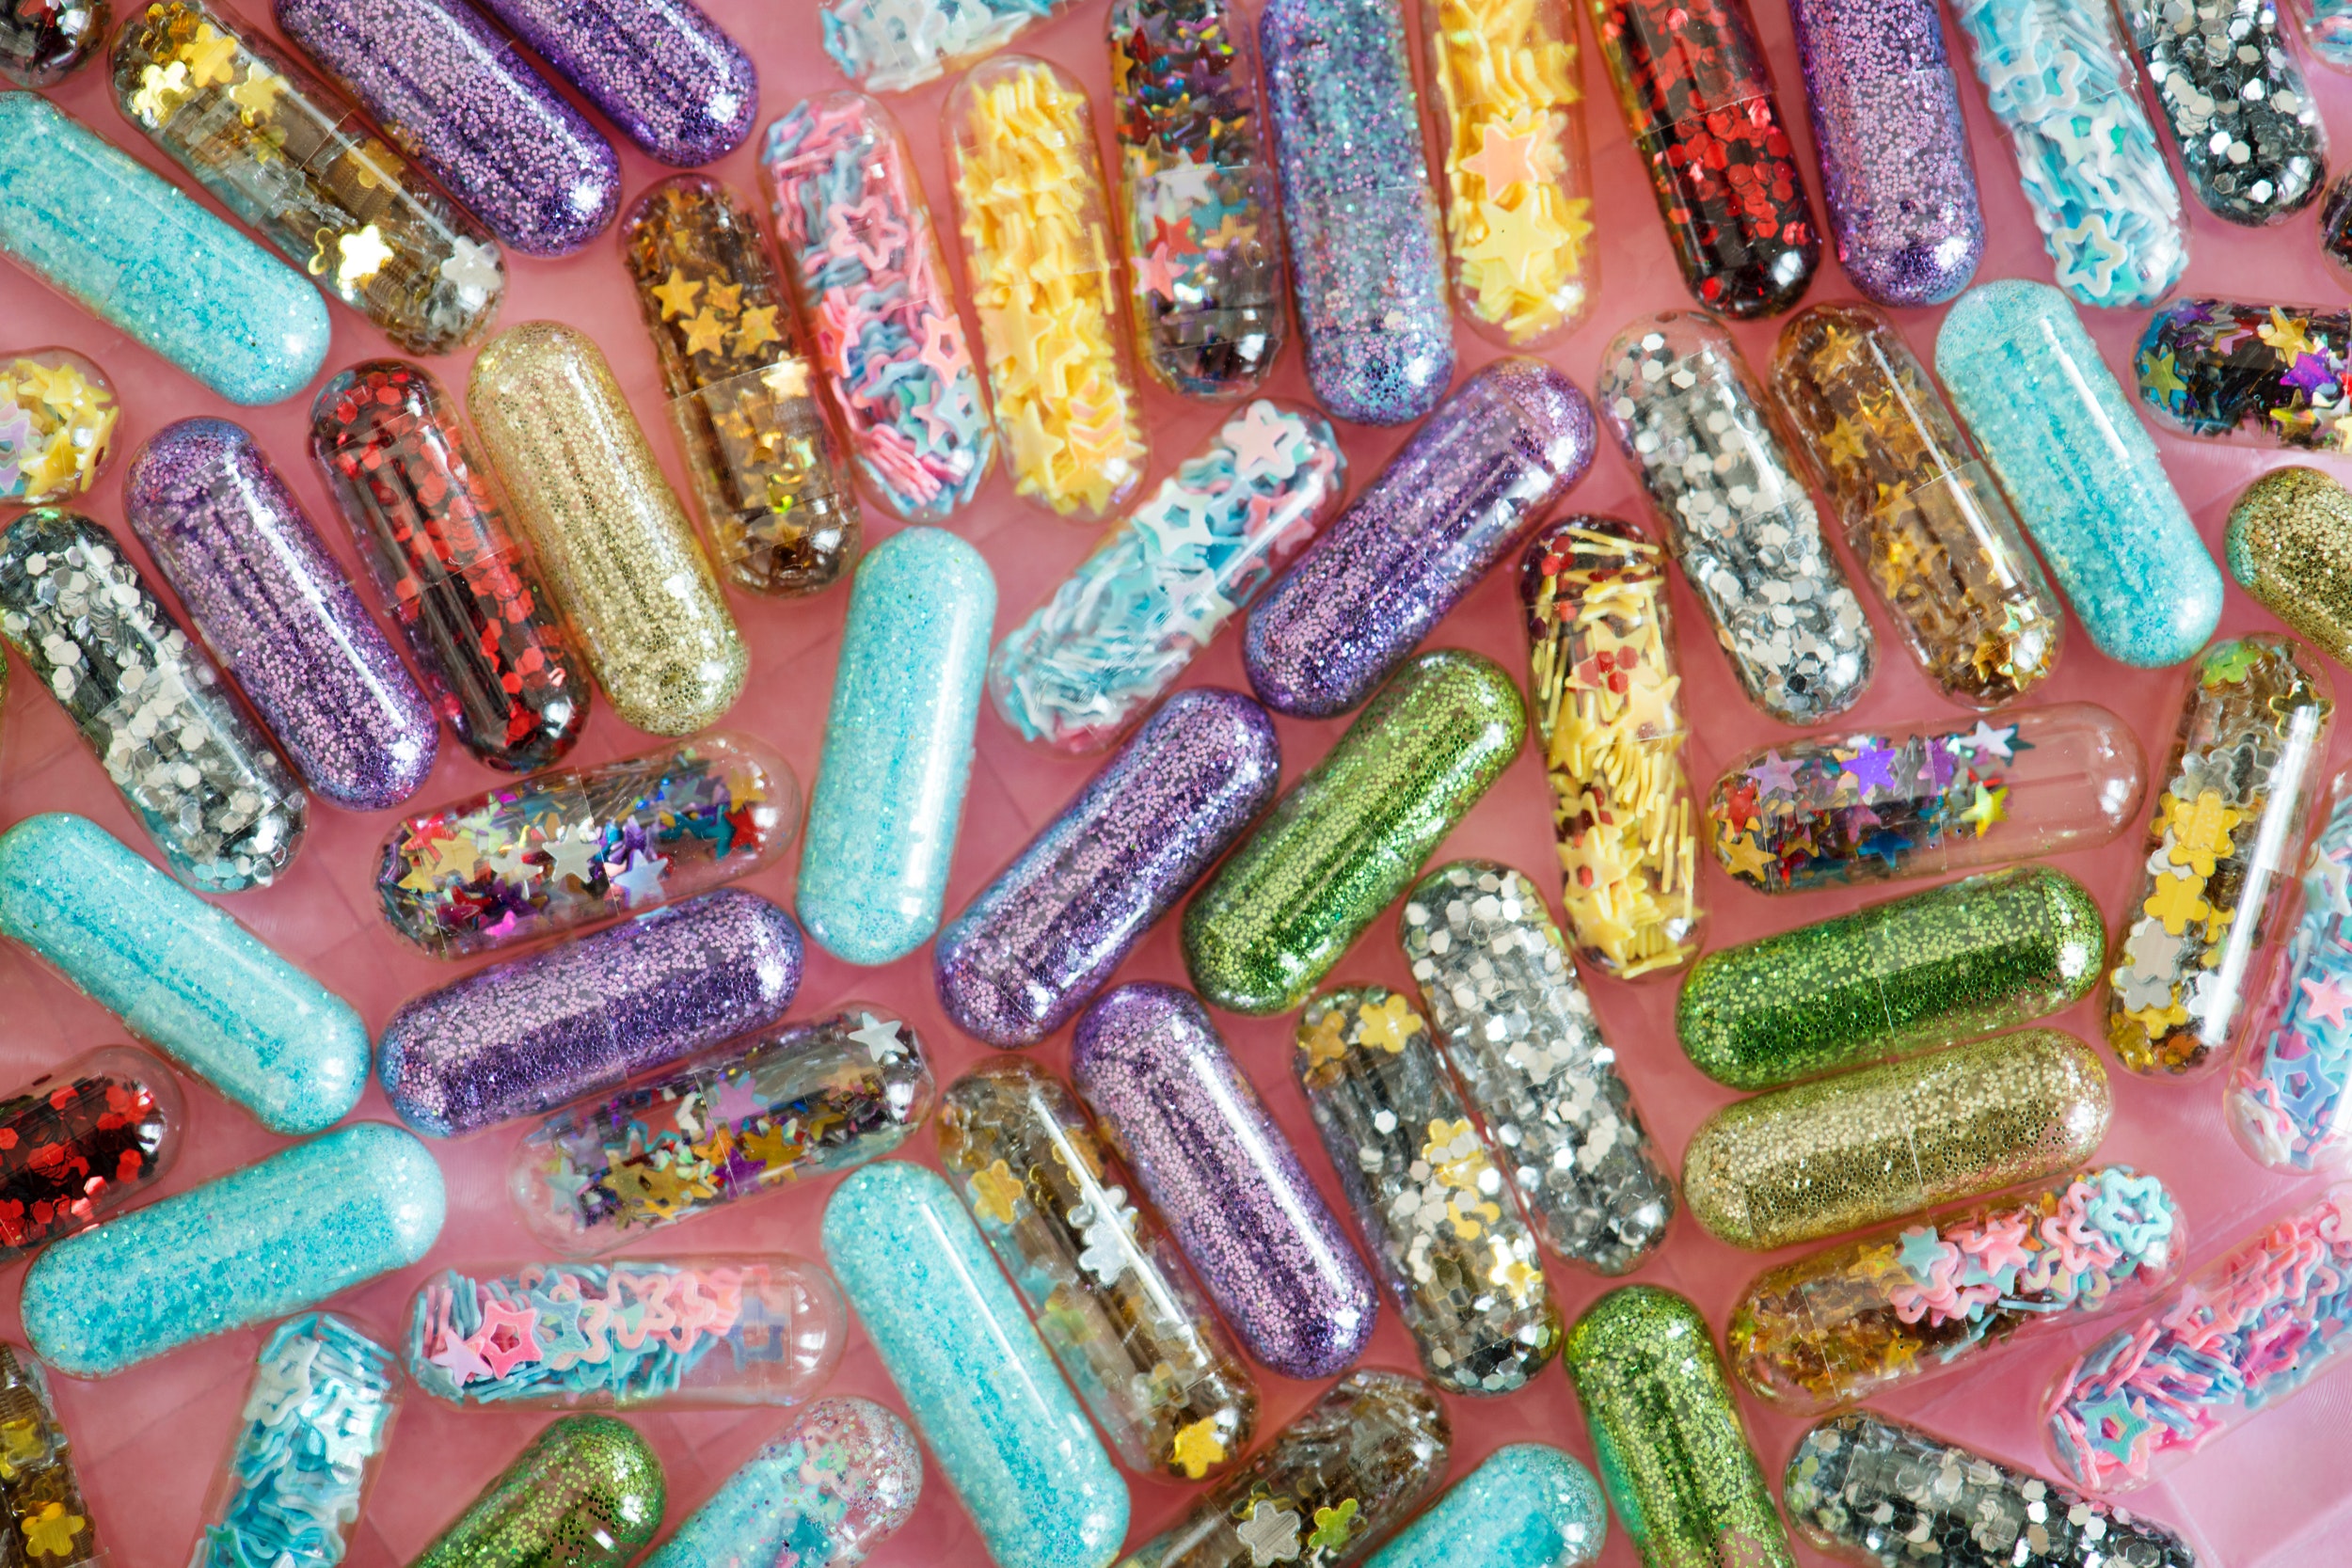 L’Ue vieta i glitter: la stretta sulle microplastiche